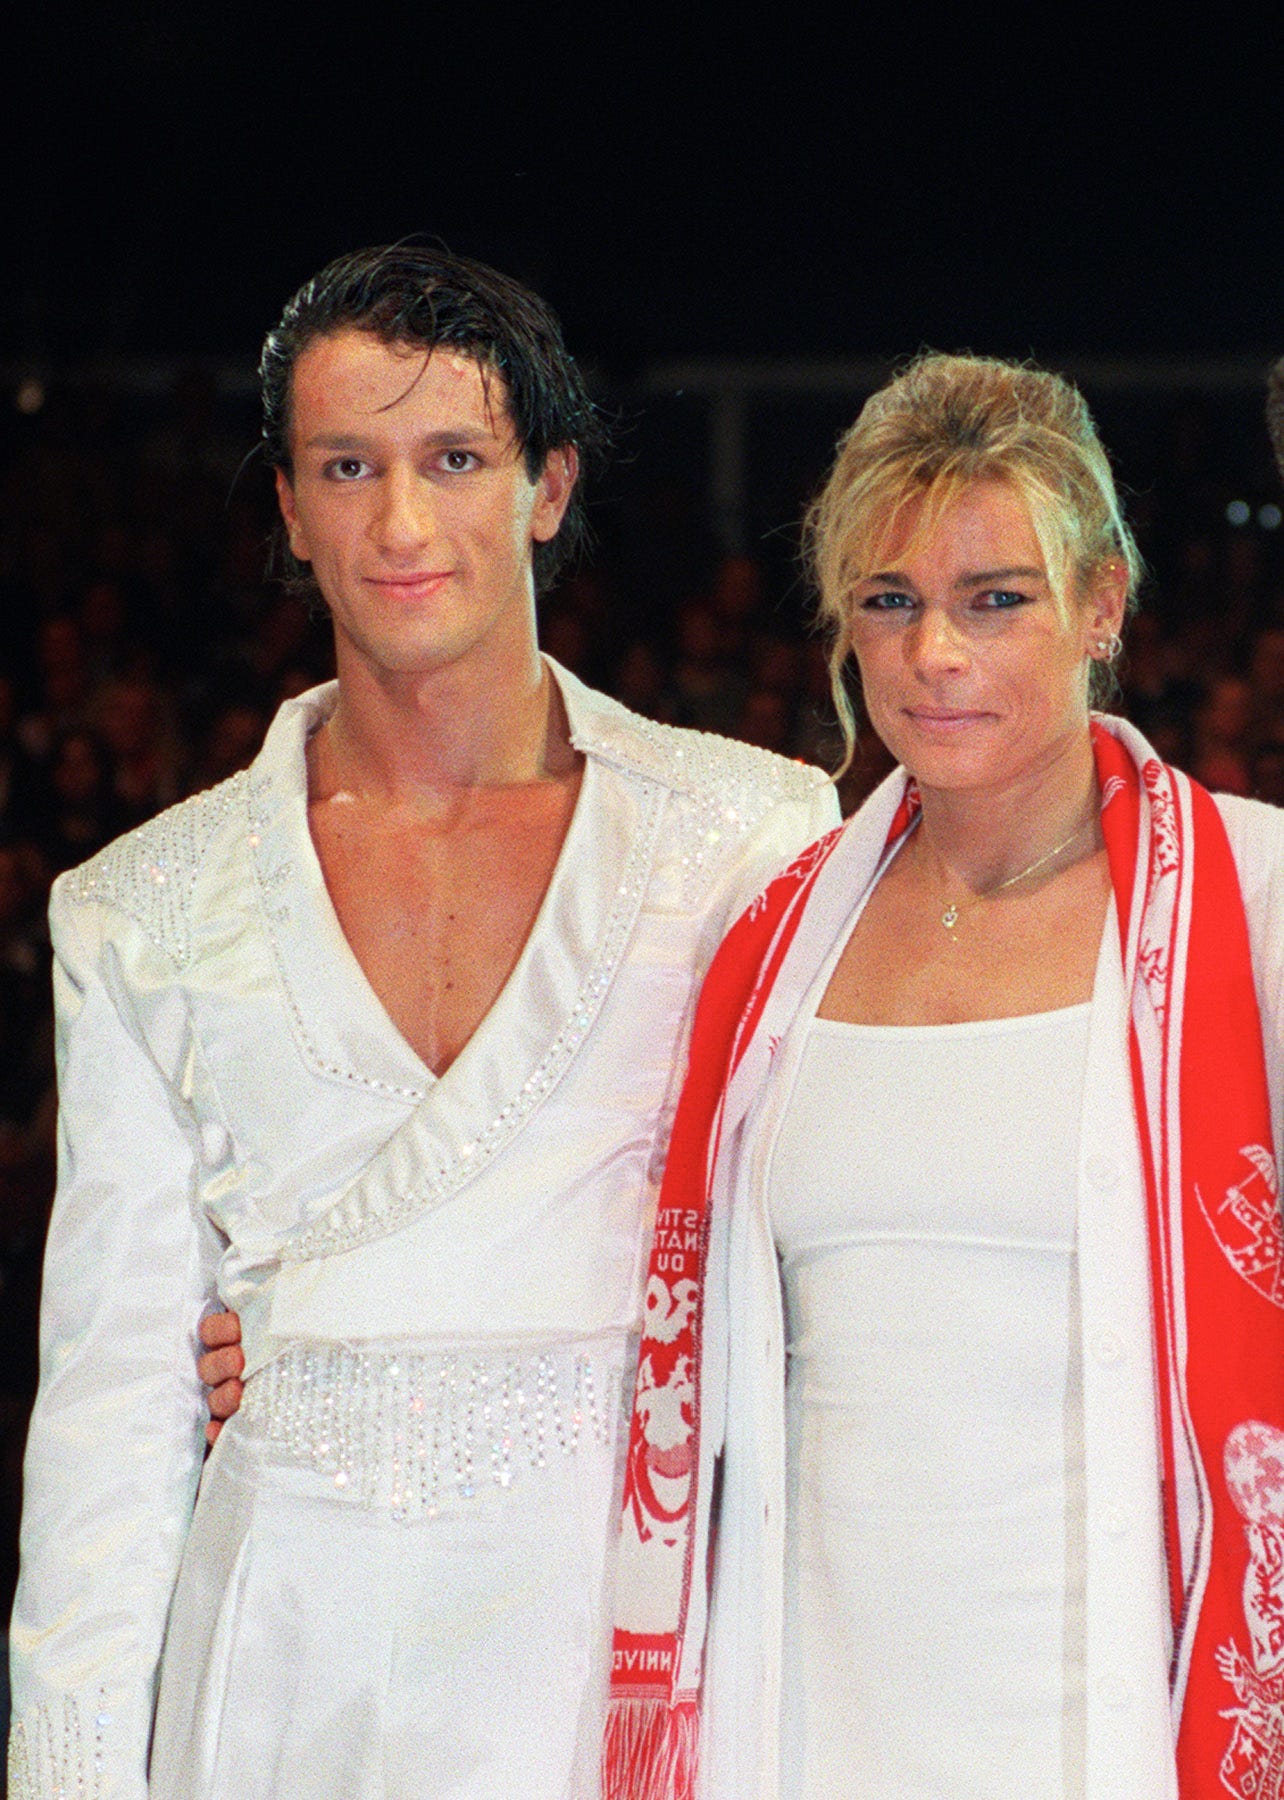 Princess Stéphanie of Monaco (right) alongside her ex-husband Adans Lopez Peres, a Portuguese acrobat.